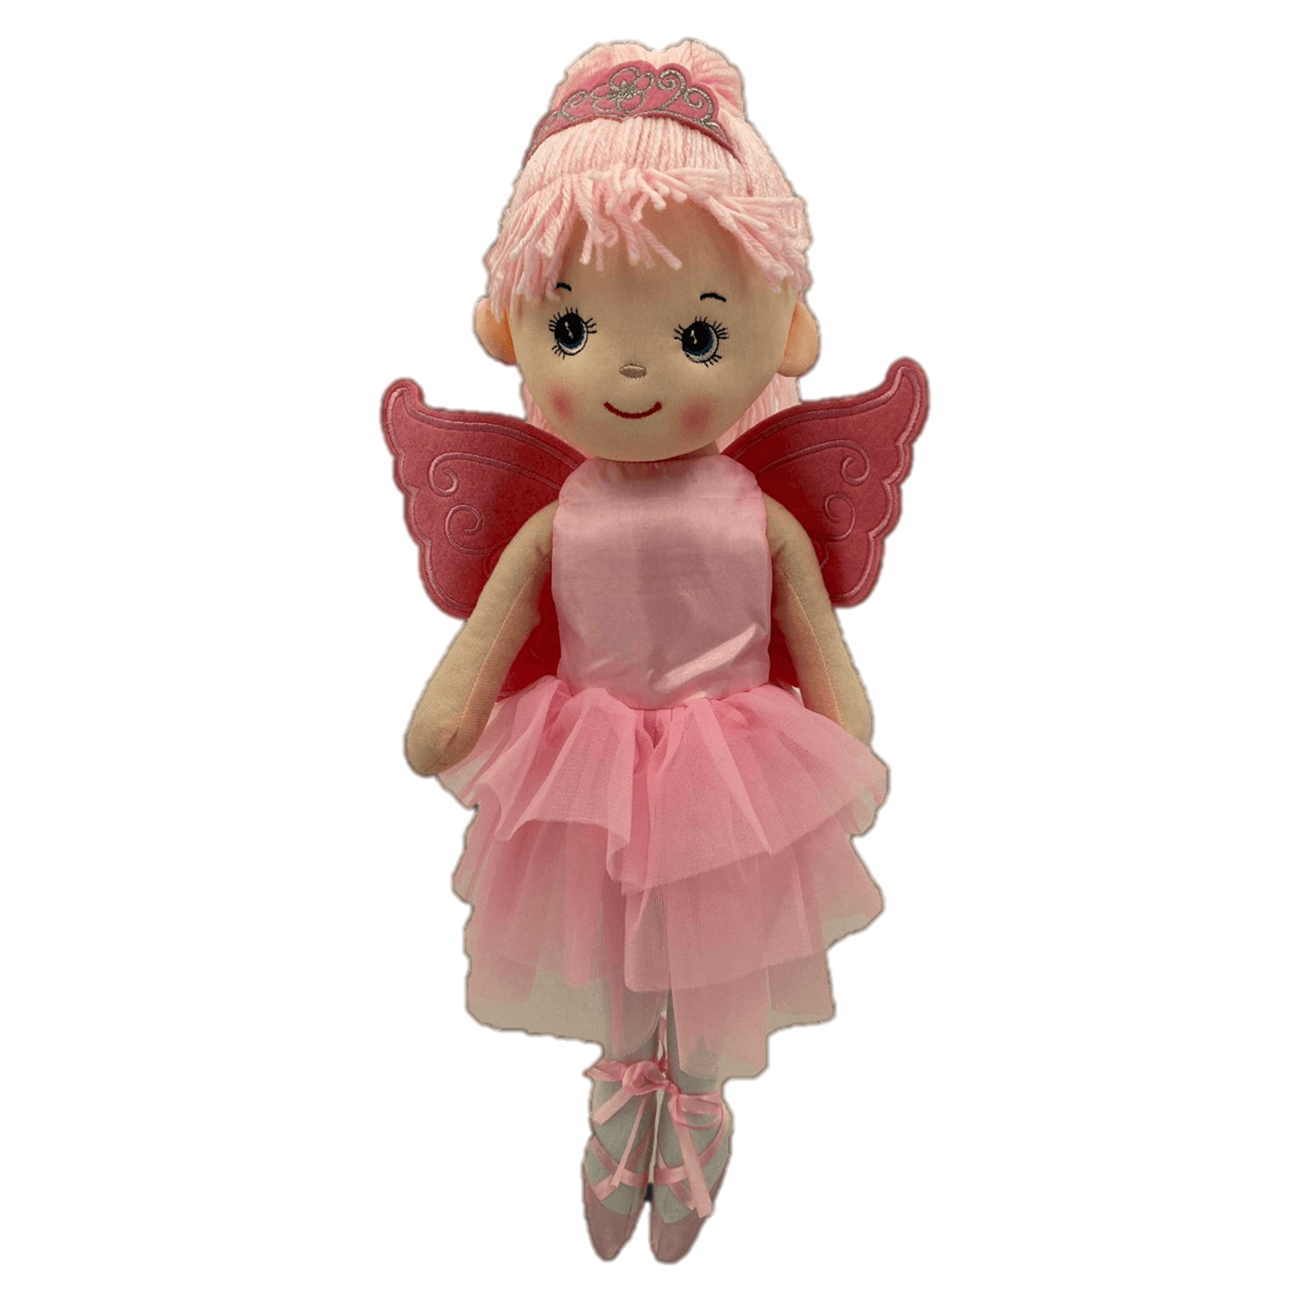 Sweety Toys 13289 bambola di pezza morbida bambola ballerina fata peluche principessa 50 cm rosa con corona